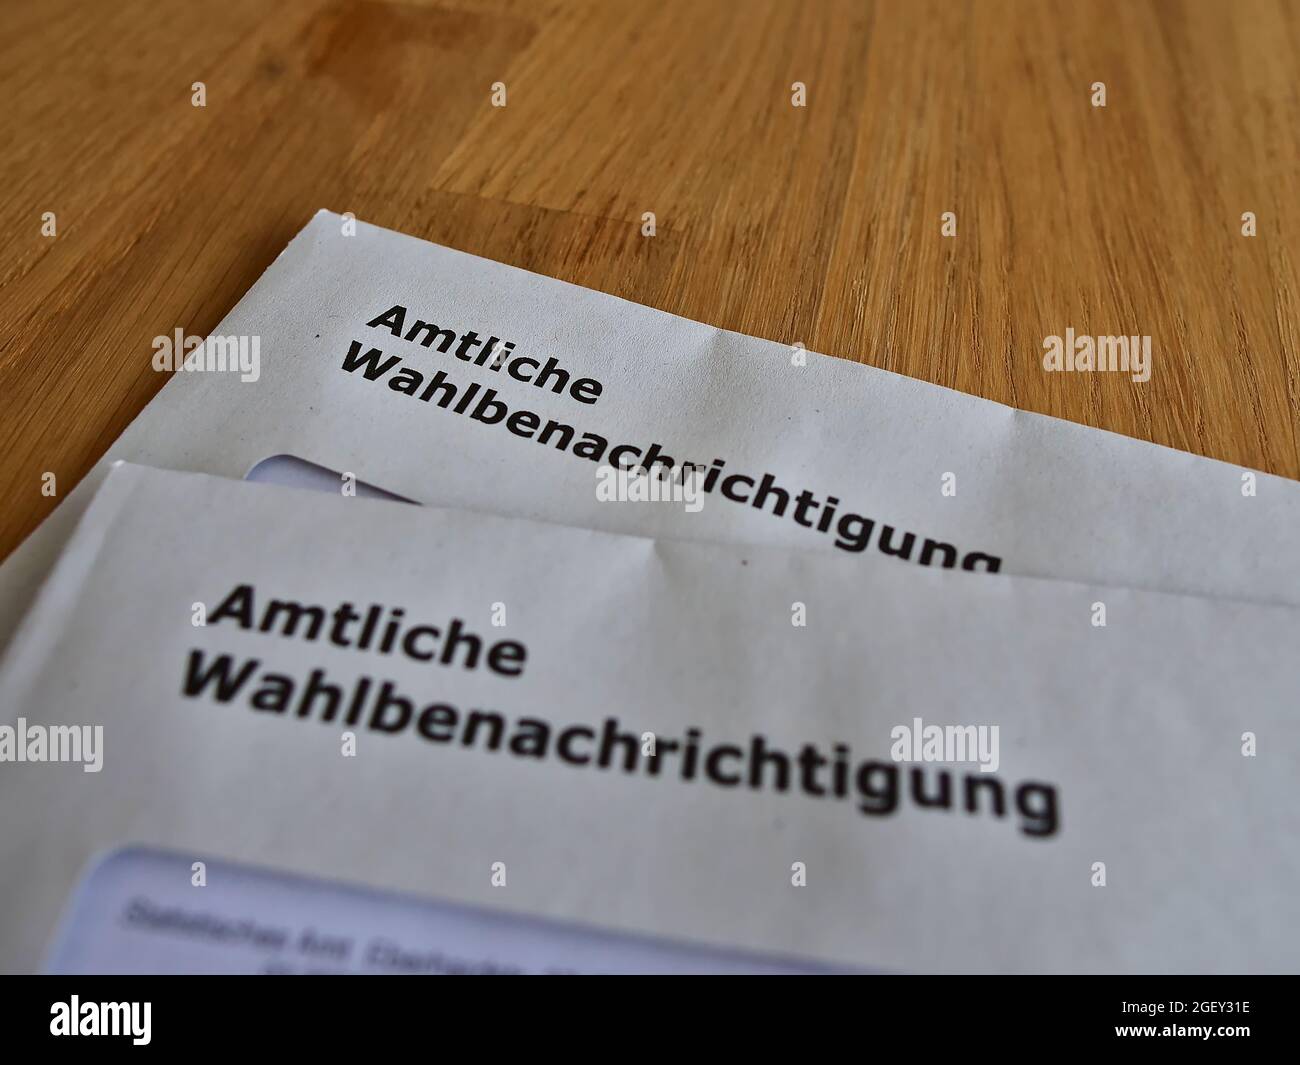 Deux lettres avec des cartes de vote officielles (en allemand sur enveloppe: 'Amtliche Wahlbenachrichtigung') pour les élections législatives en Allemagne en 2021. Banque D'Images